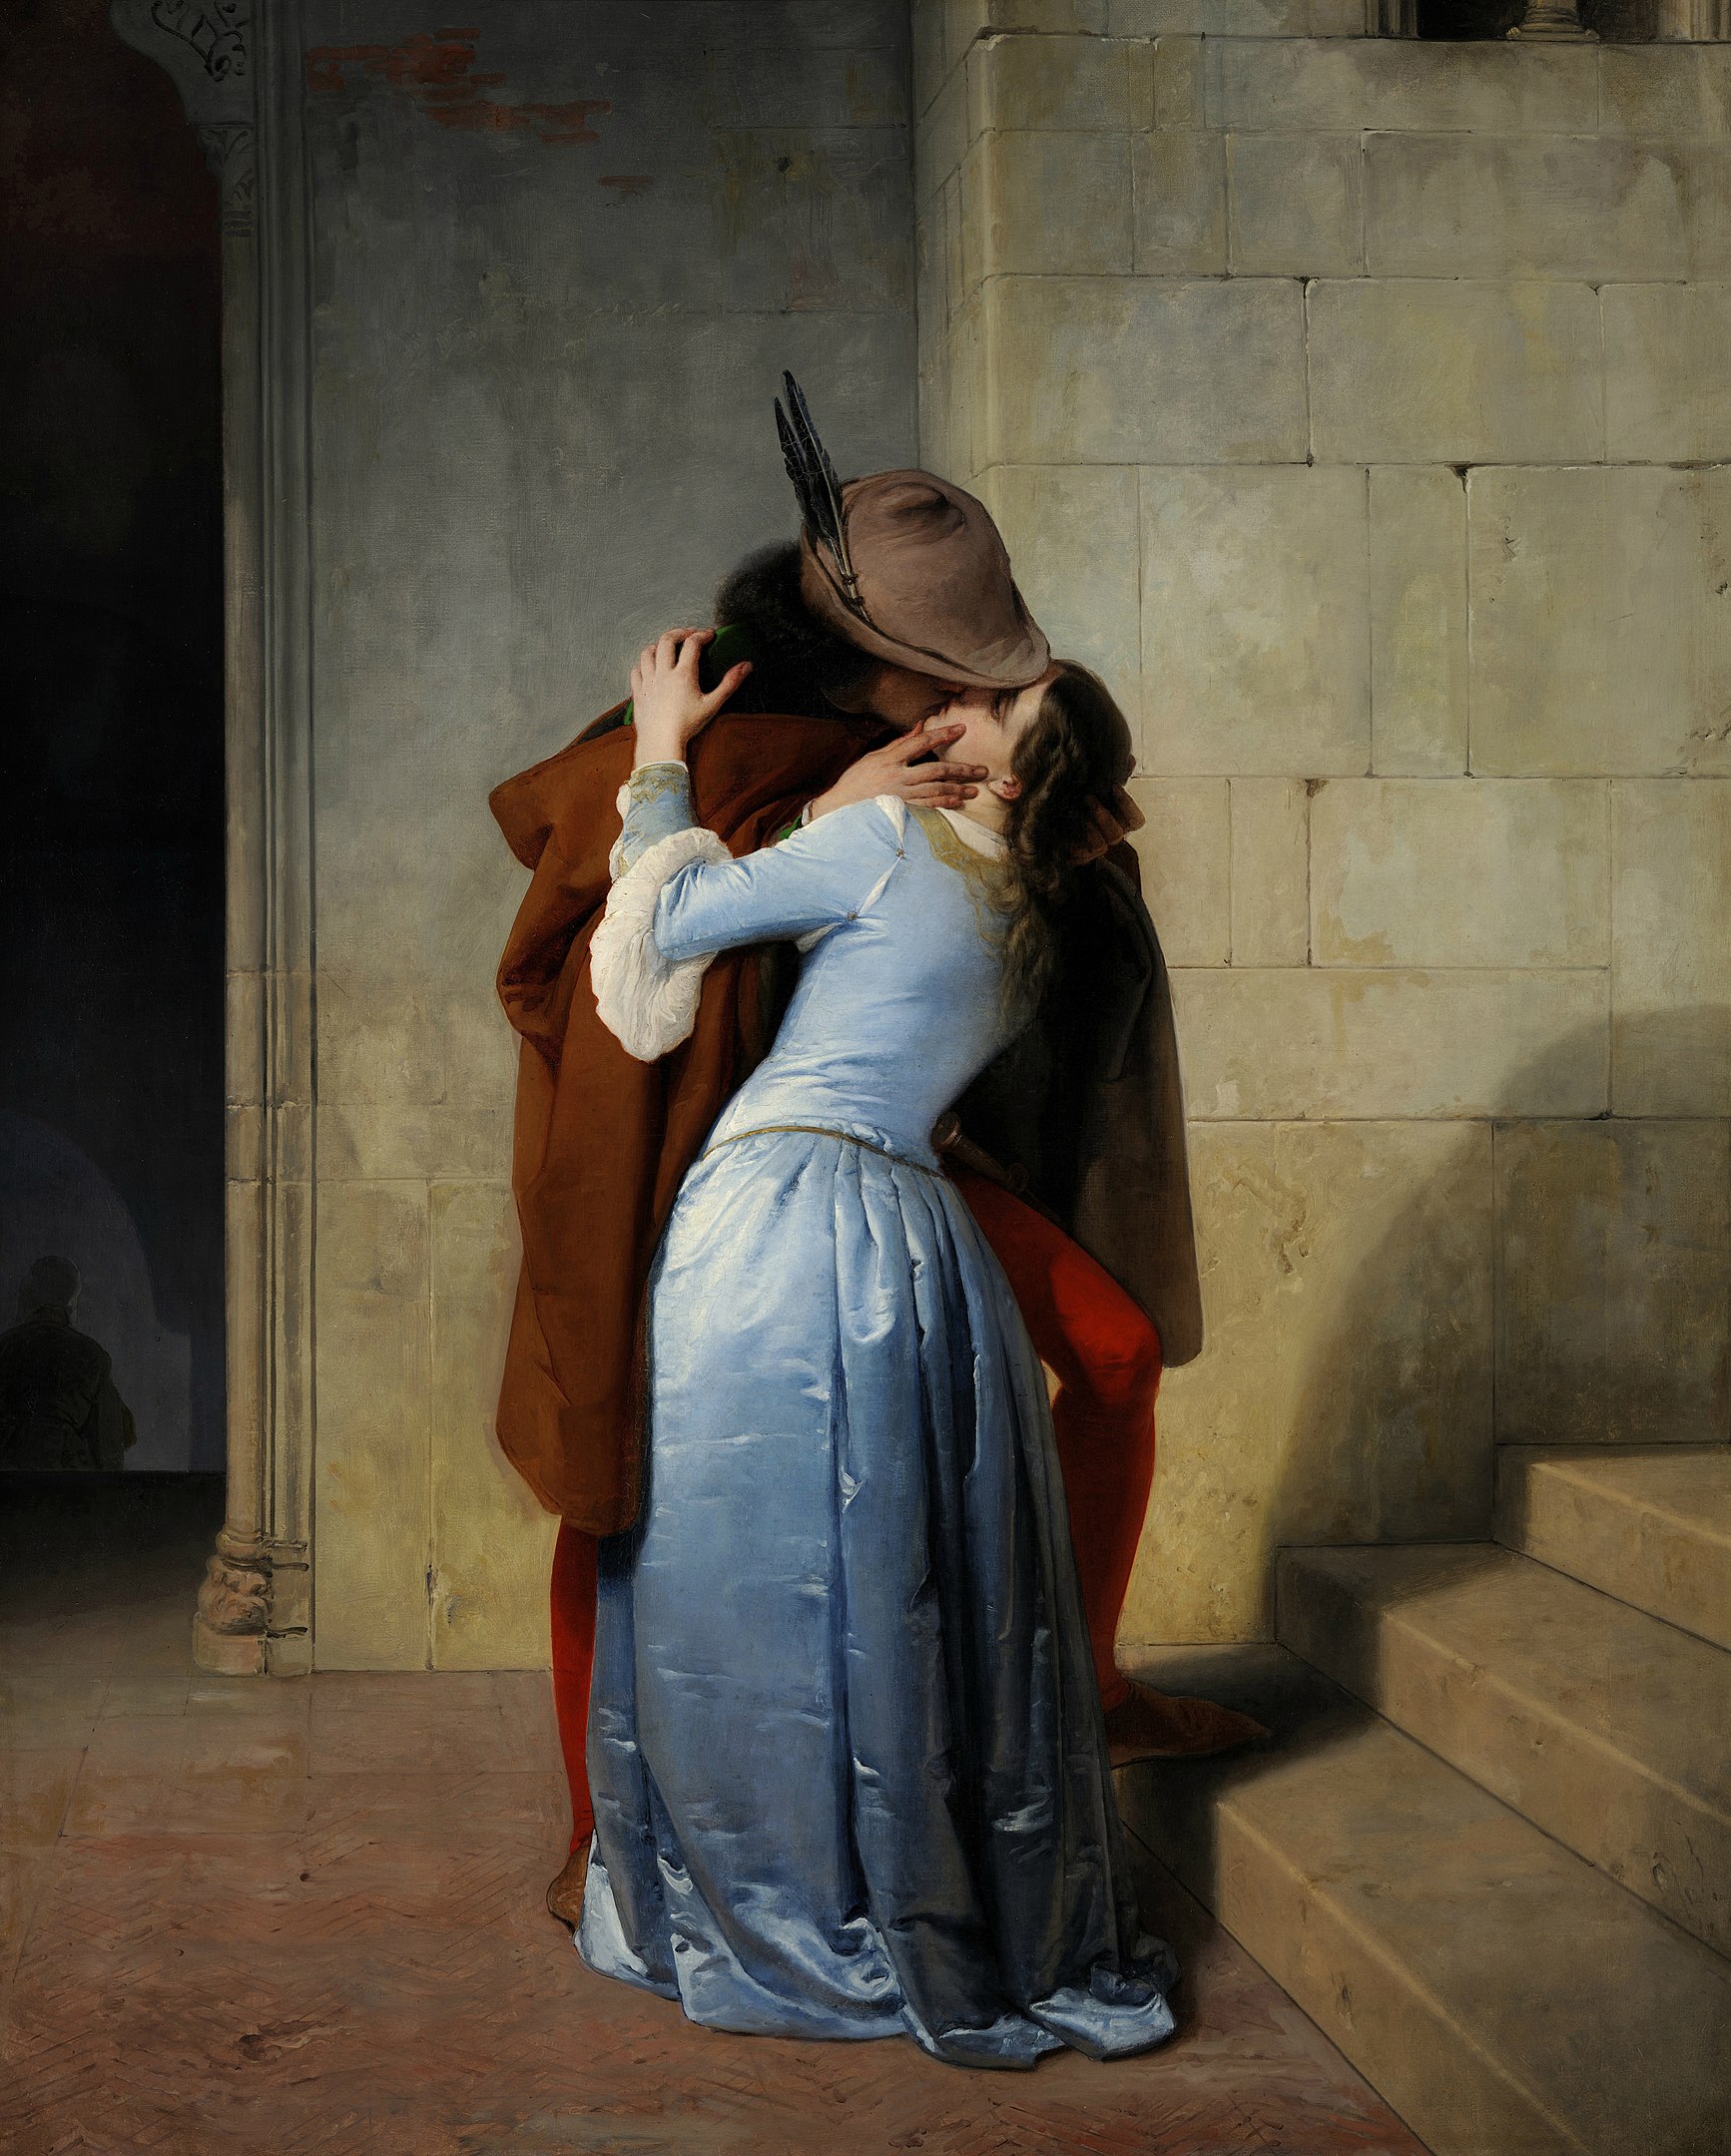 Öpücük (orig. "The Kiss") by Francesco Hayez - 1859 - 110 cm × 88 cm 